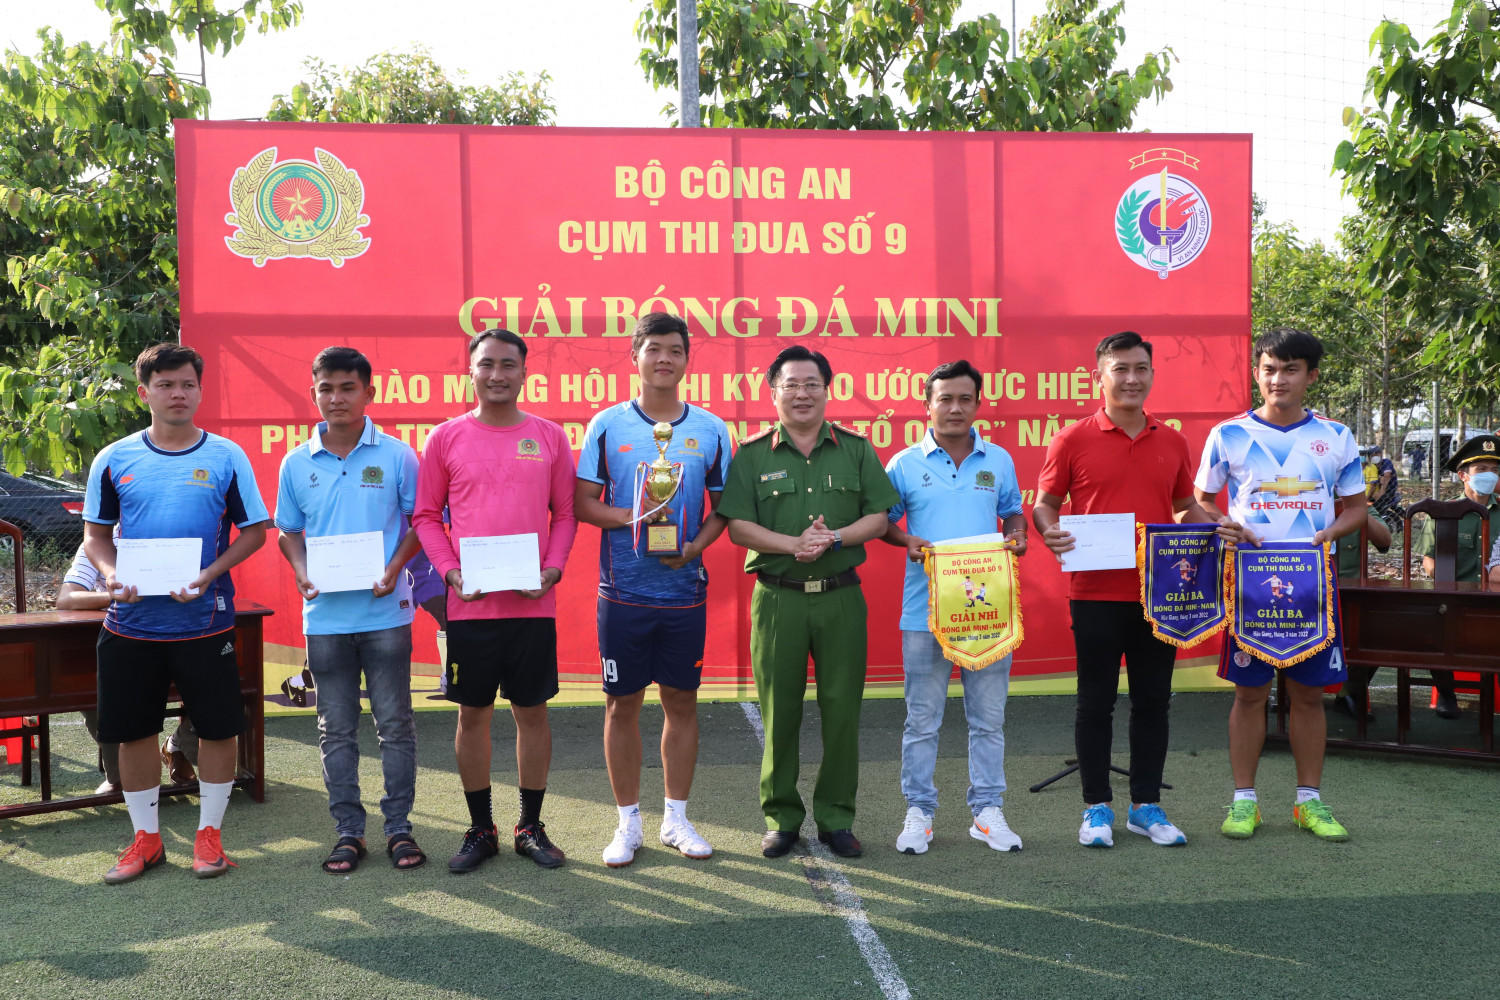 Đại tá Lâm Phước Nguyên, Phó Giám đốc Công an tỉnh Hậu Giang trao giải cho các Đội và cá nhân đạt thành tích tại giải bóng đá